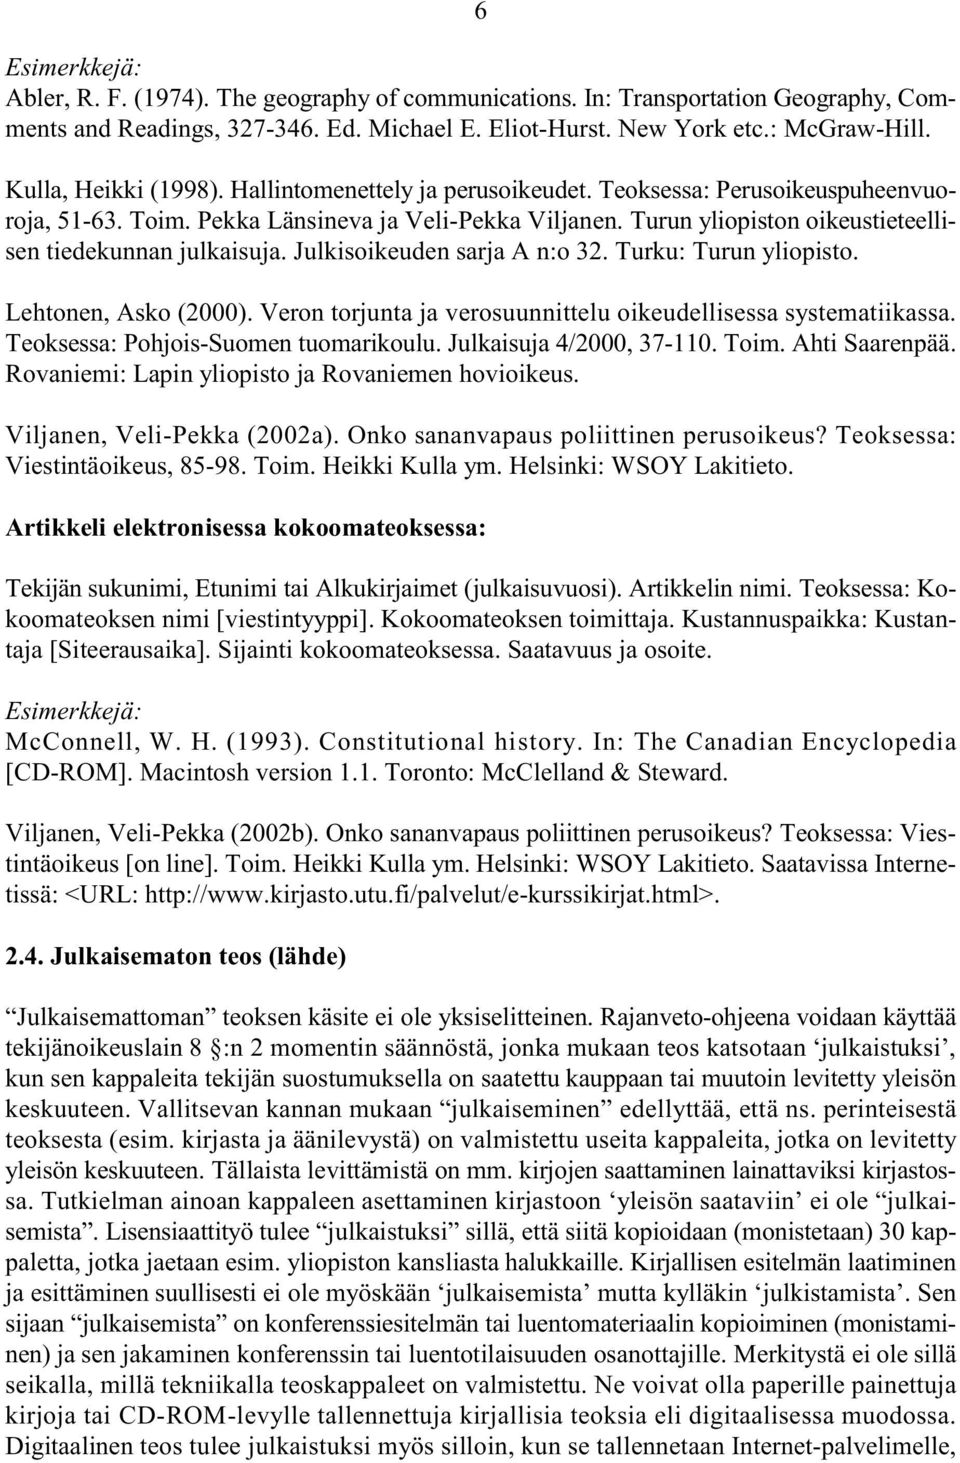 Julkisoikeuden sarja A n:o 32. Turku: Turun yliopisto. Lehtonen, Asko (2000). Veron torjunta ja verosuunnittelu oikeudellisessa systematiikassa. Teoksessa: Pohjois-Suomen tuomarikoulu.